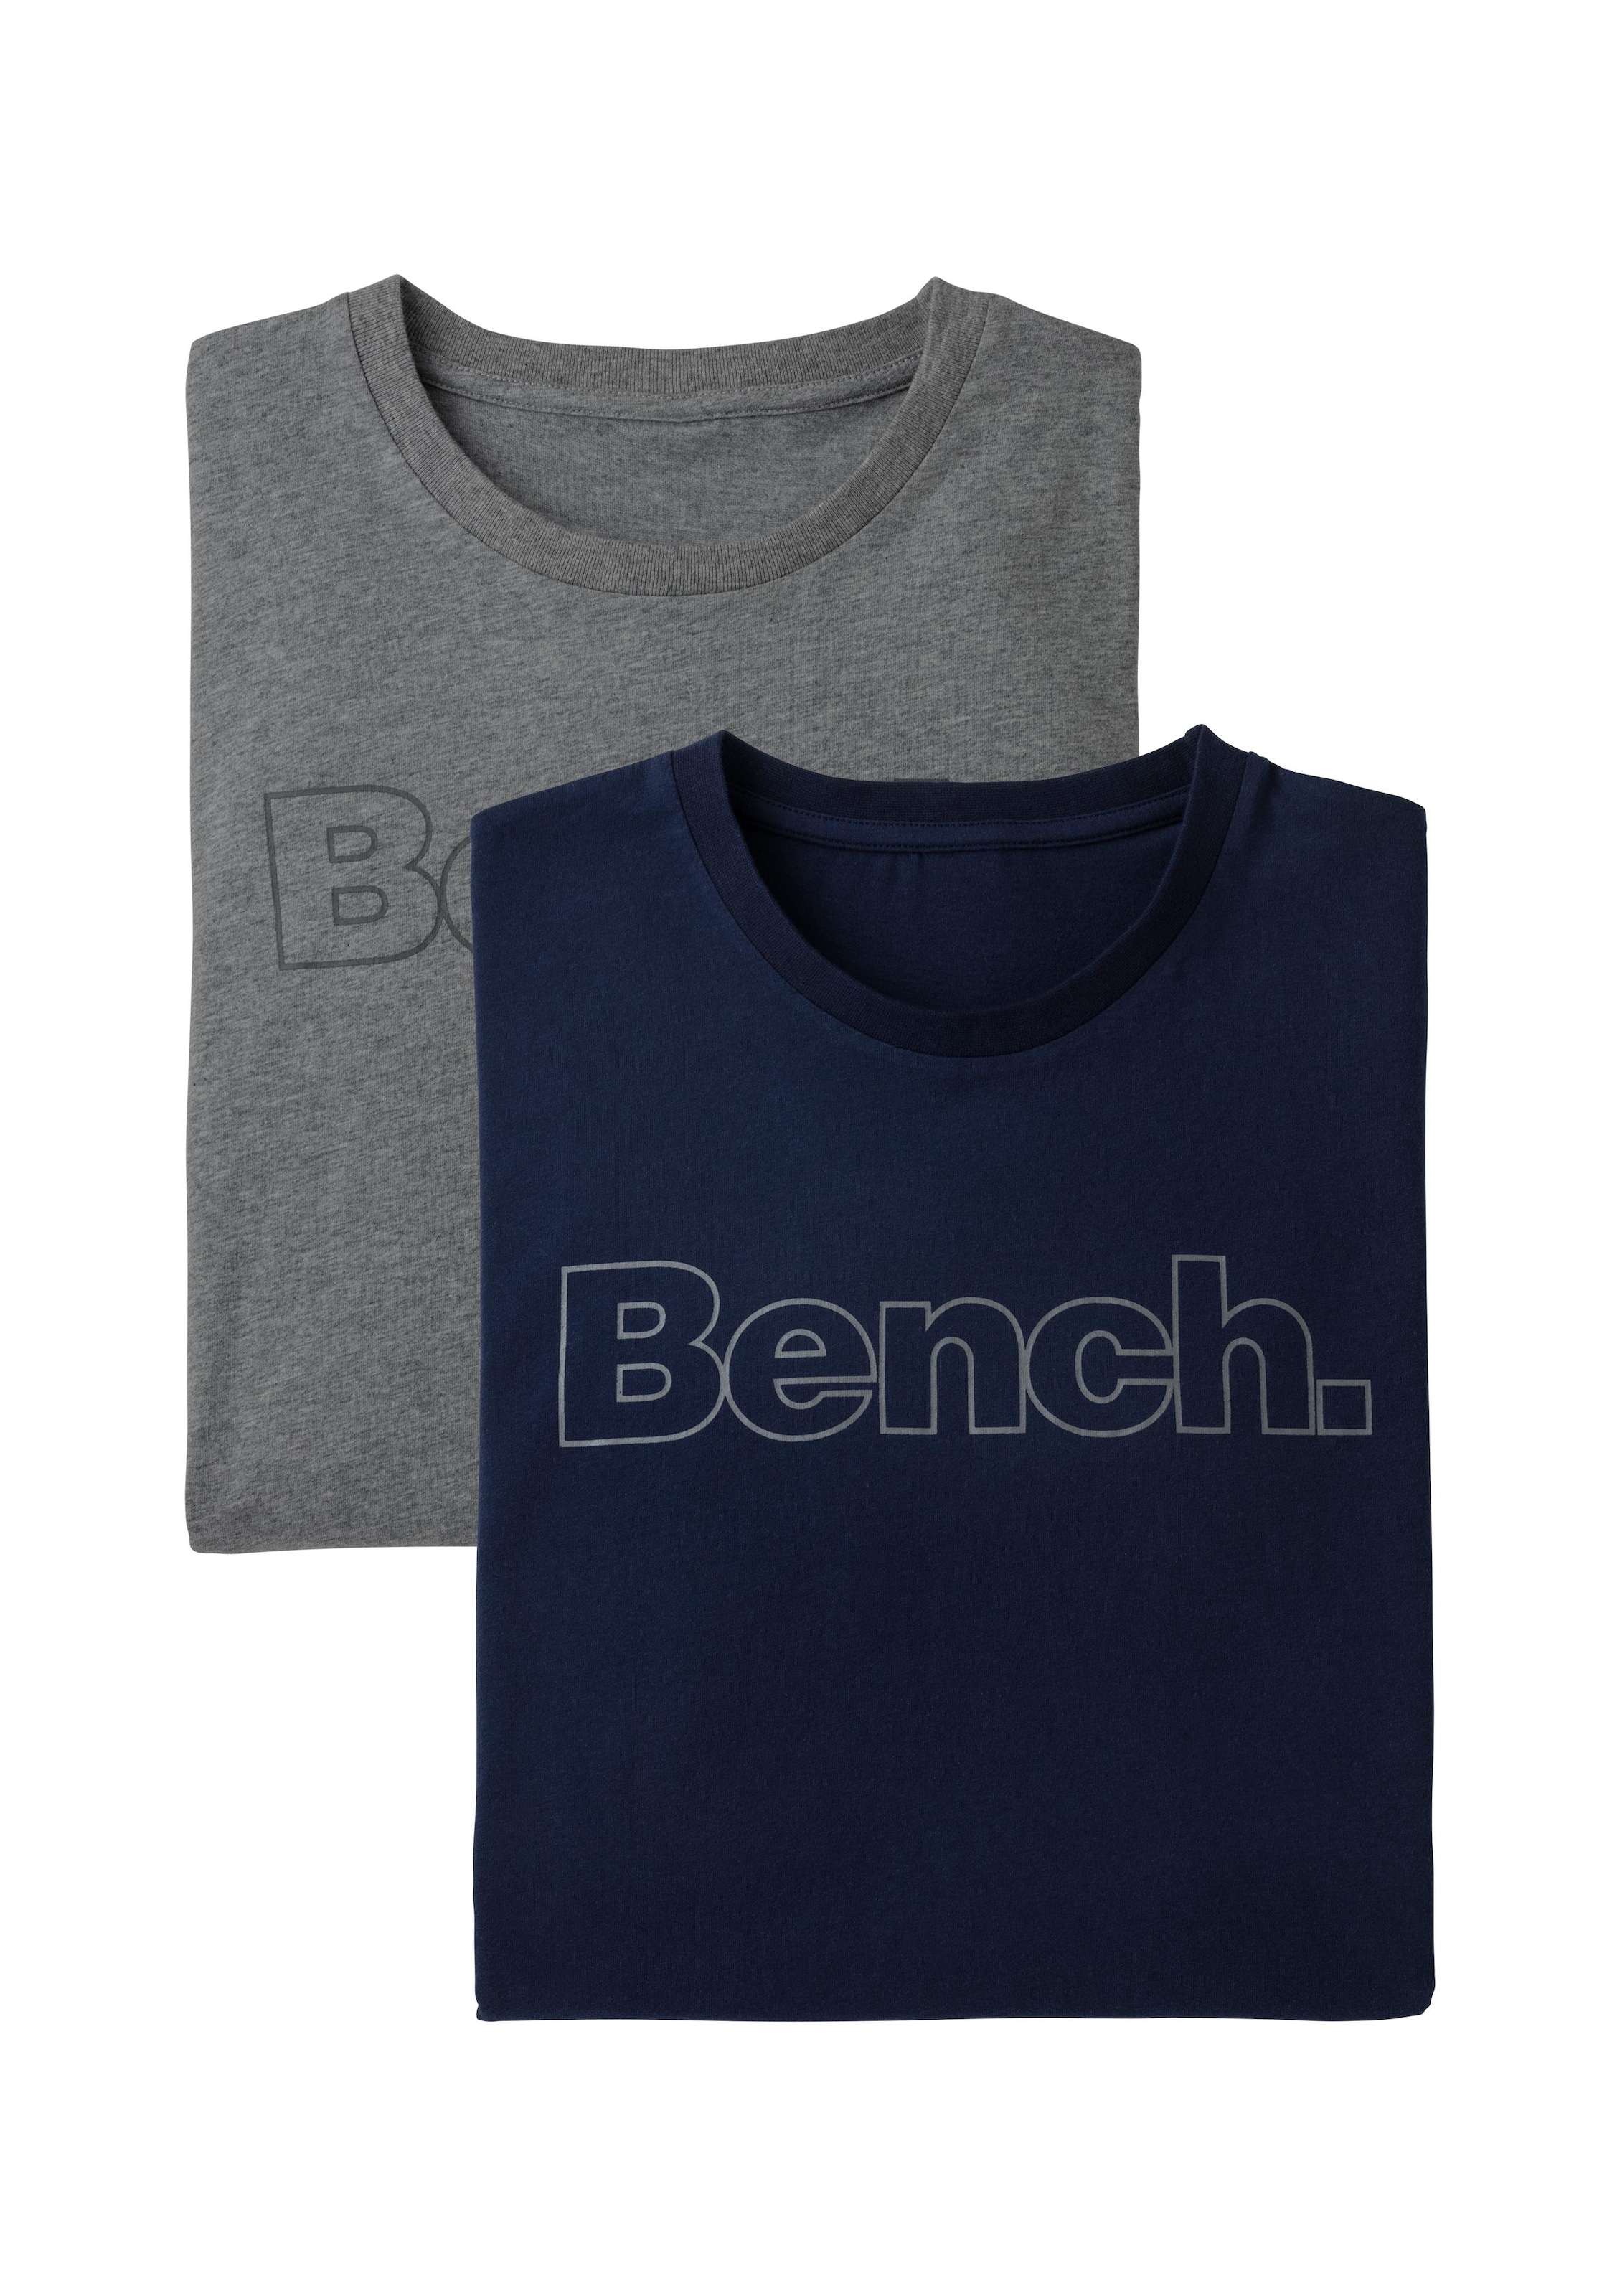 Bench. Loungewear Langarmshirt, mit Bench. Print vorn